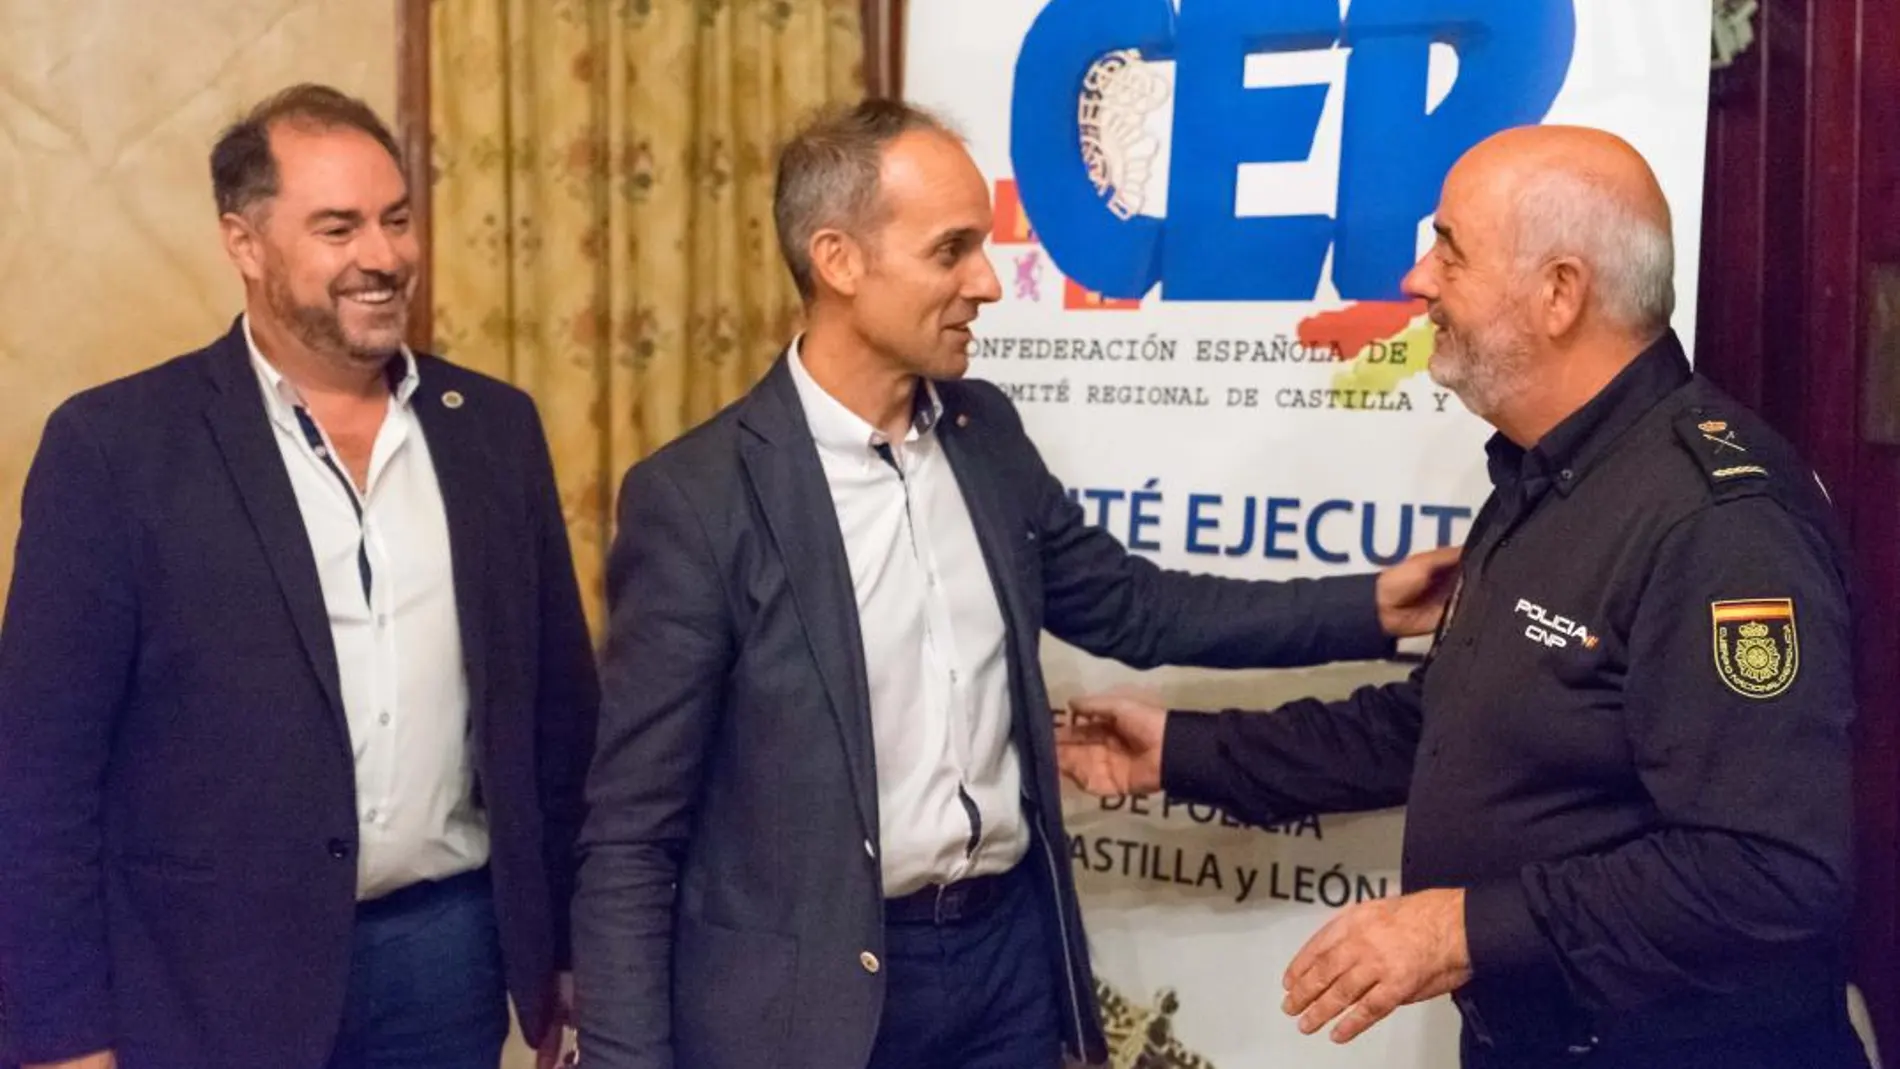 El jefe superior de Policía de Castilla y León, Jorge Zurita, saluda al secretario nacional del CEP, Antonio Labrador en presencia del secretario regional, Félix Ruiz